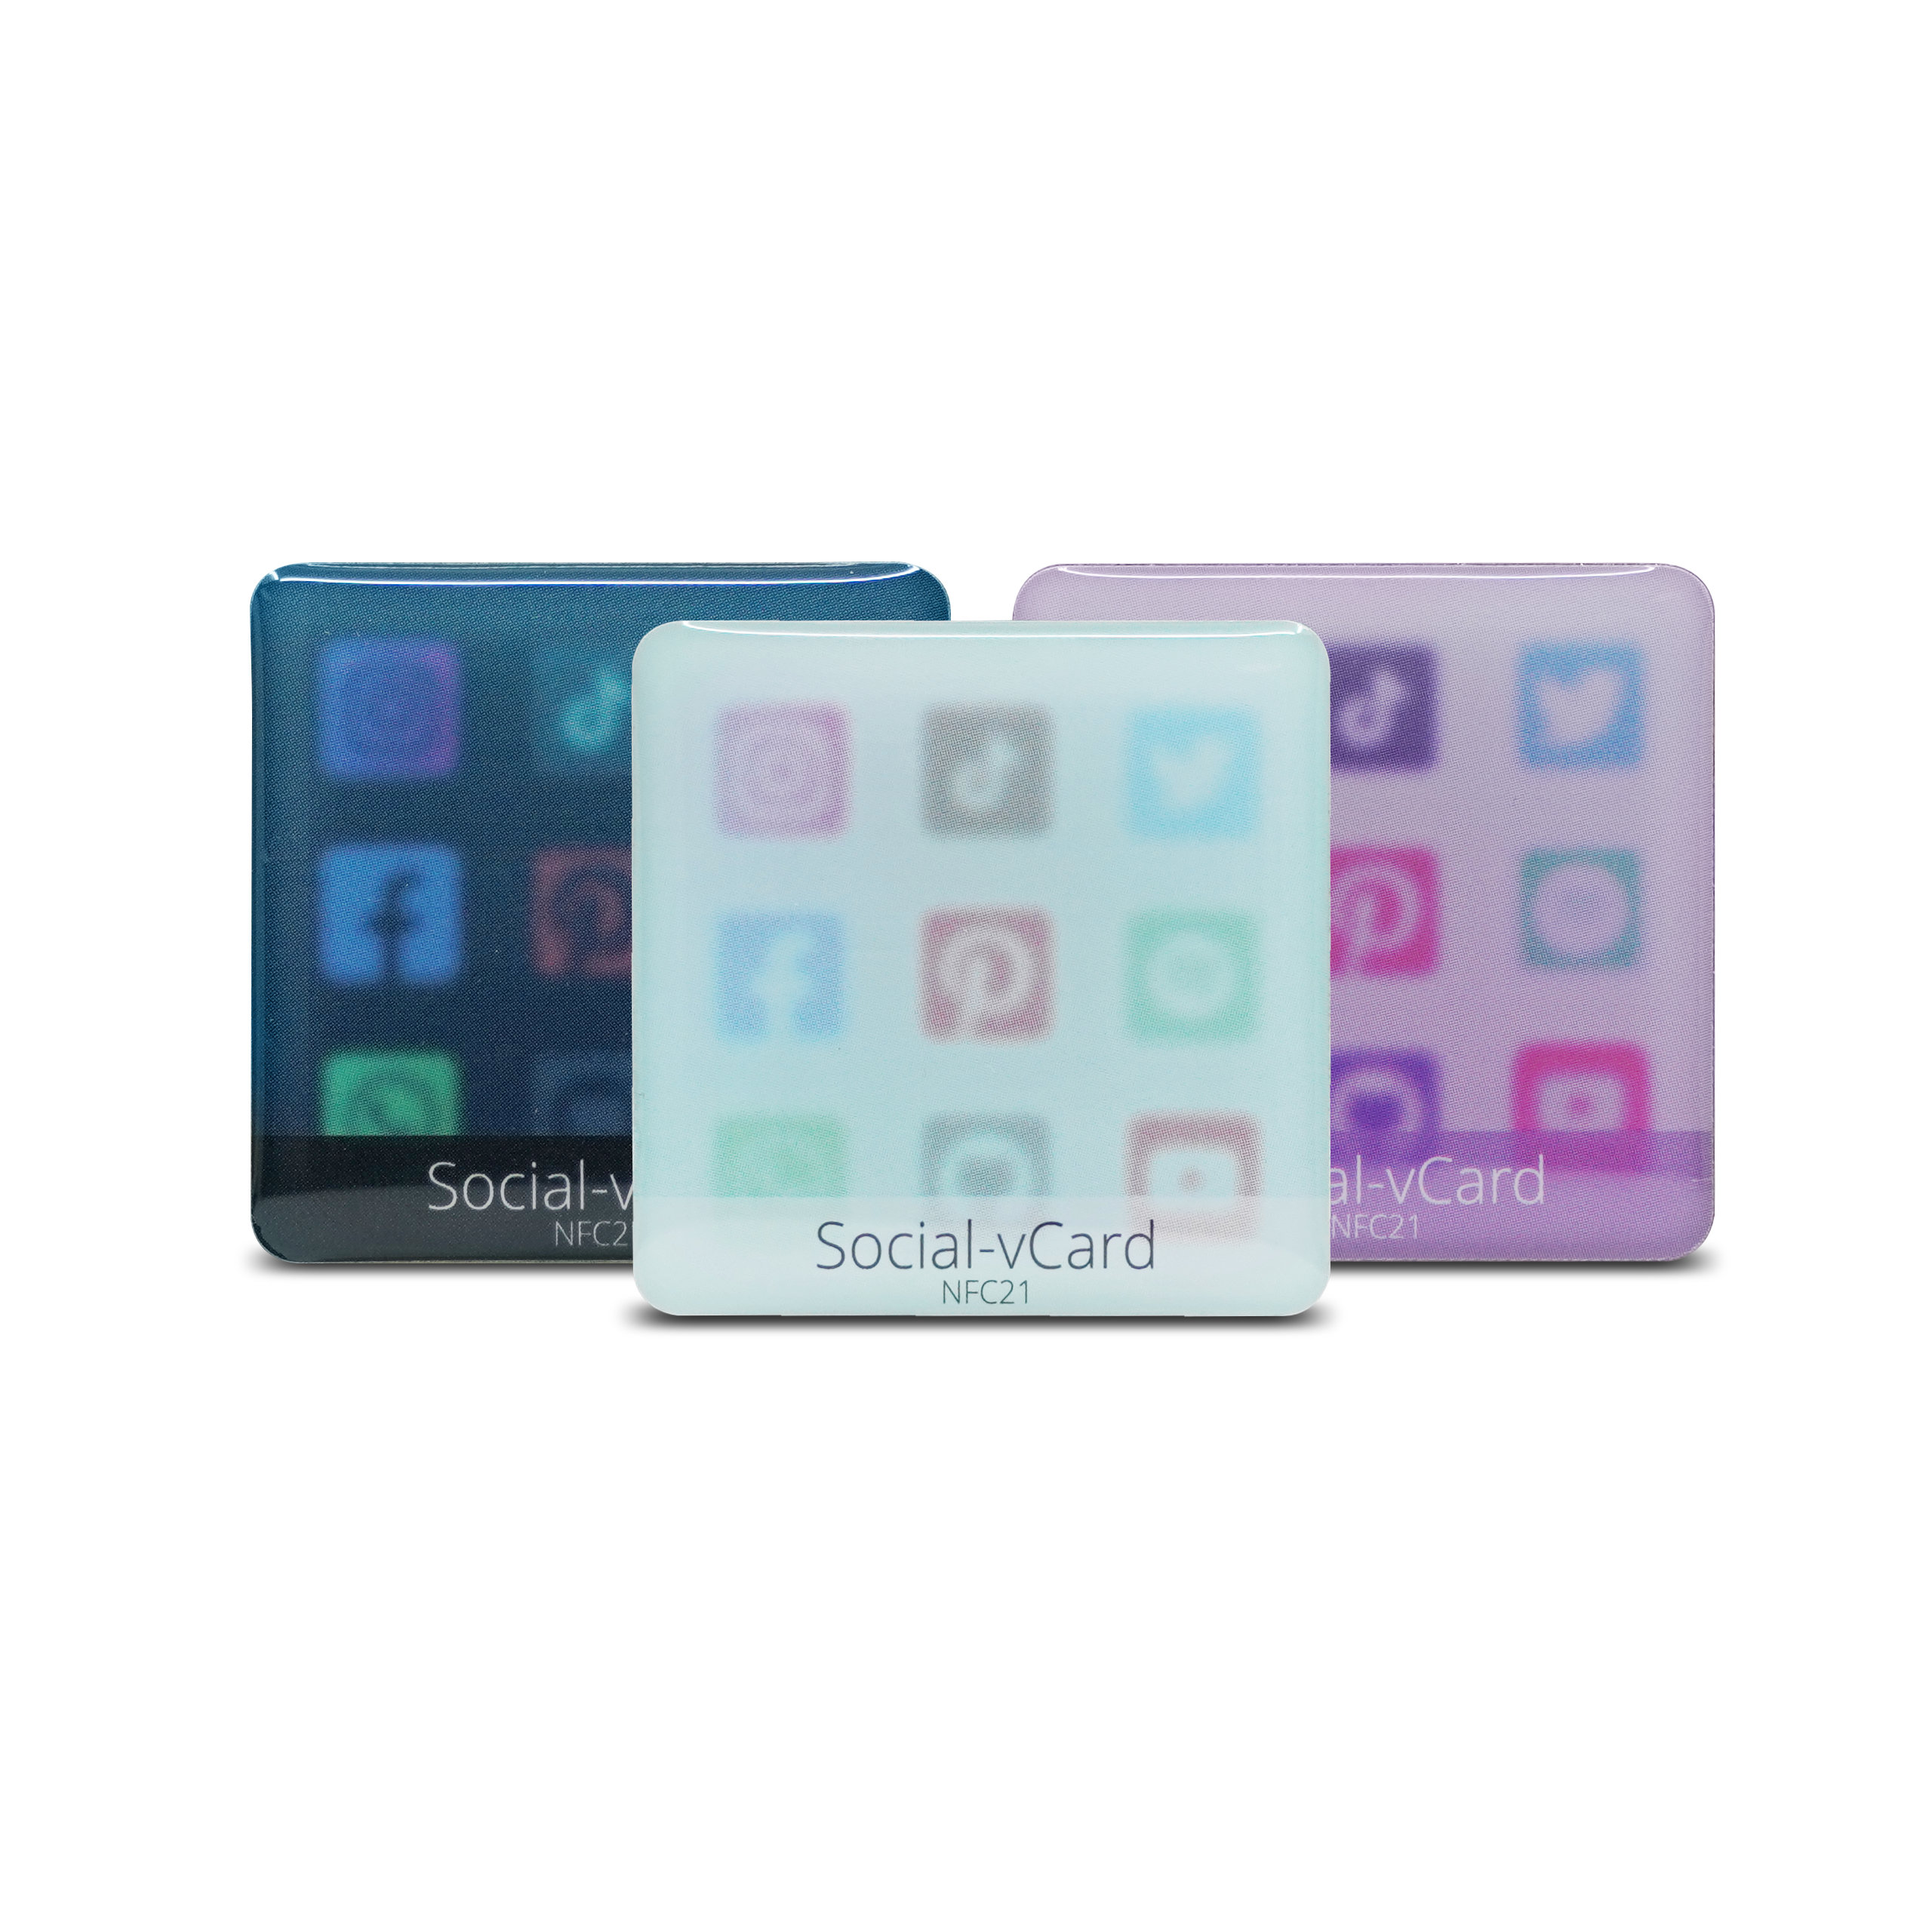 Social-vCard Light - Digital social media sticker - PET - 35 x 35 mm - light blue